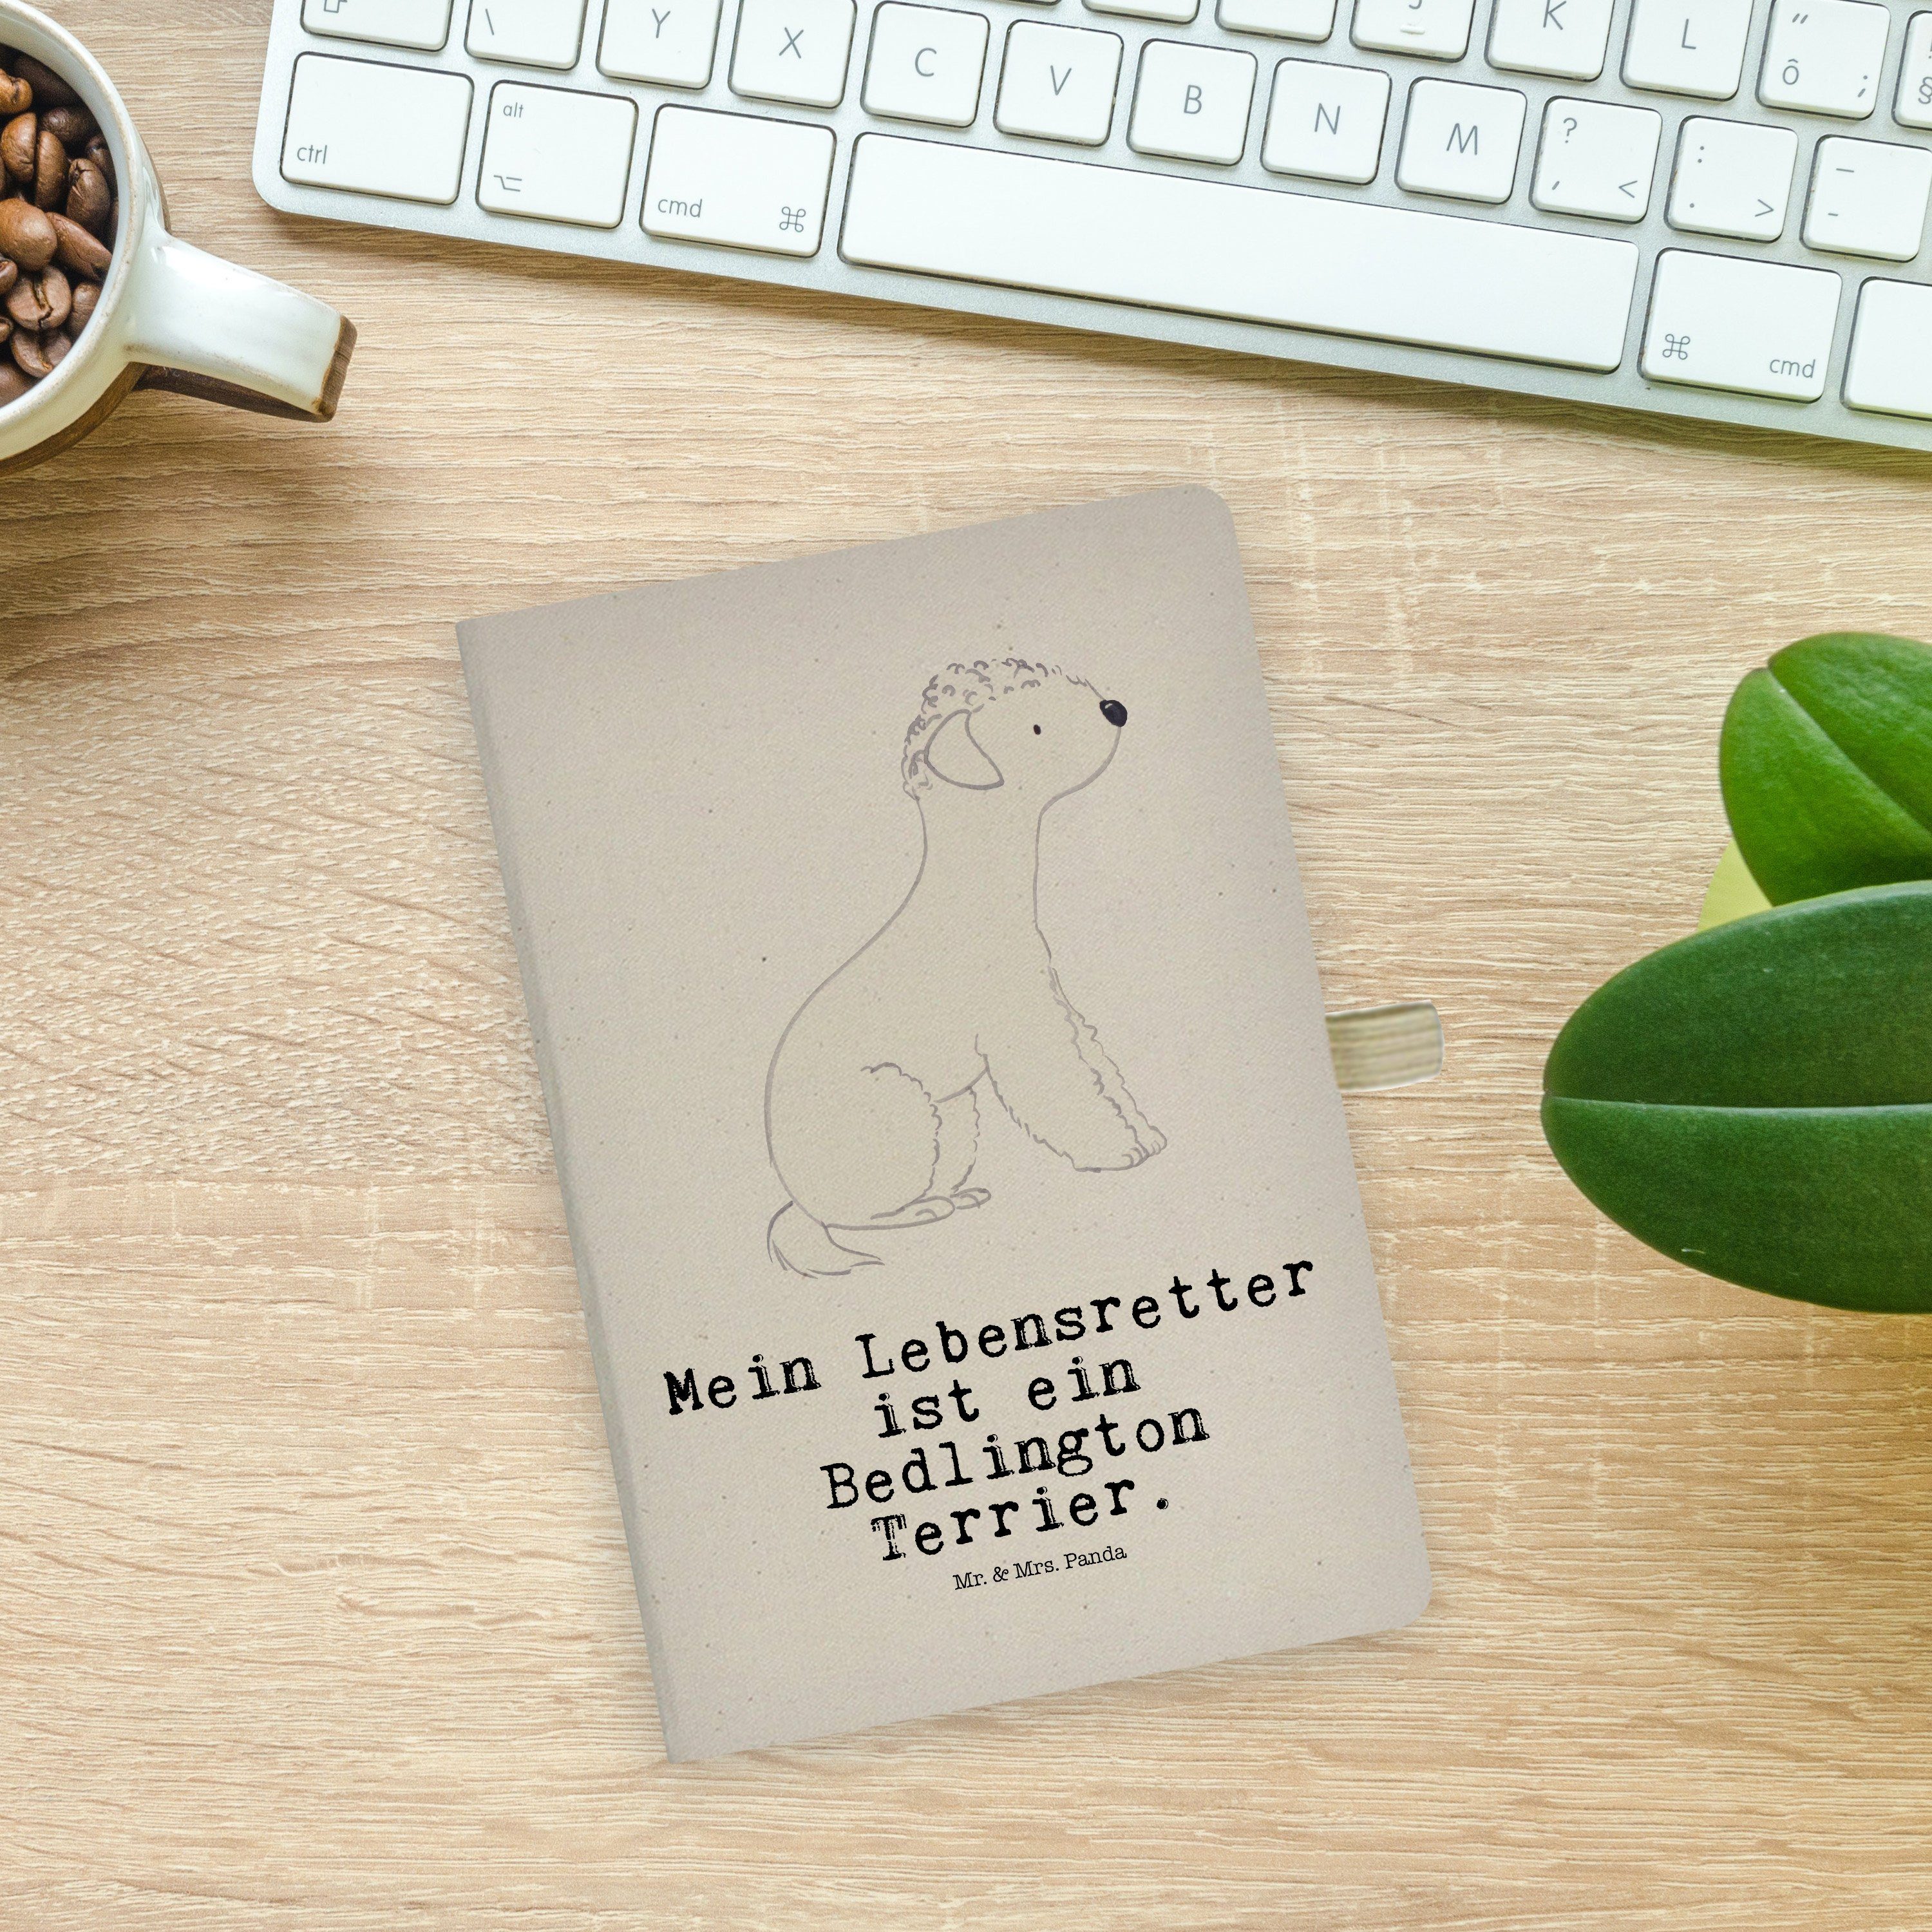 Mr. & Mrs. Panda & Terrier Schreibheft Bedlington Transparent Panda Lebensretter Notizbuch - Mrs. Mr. - Geschenk